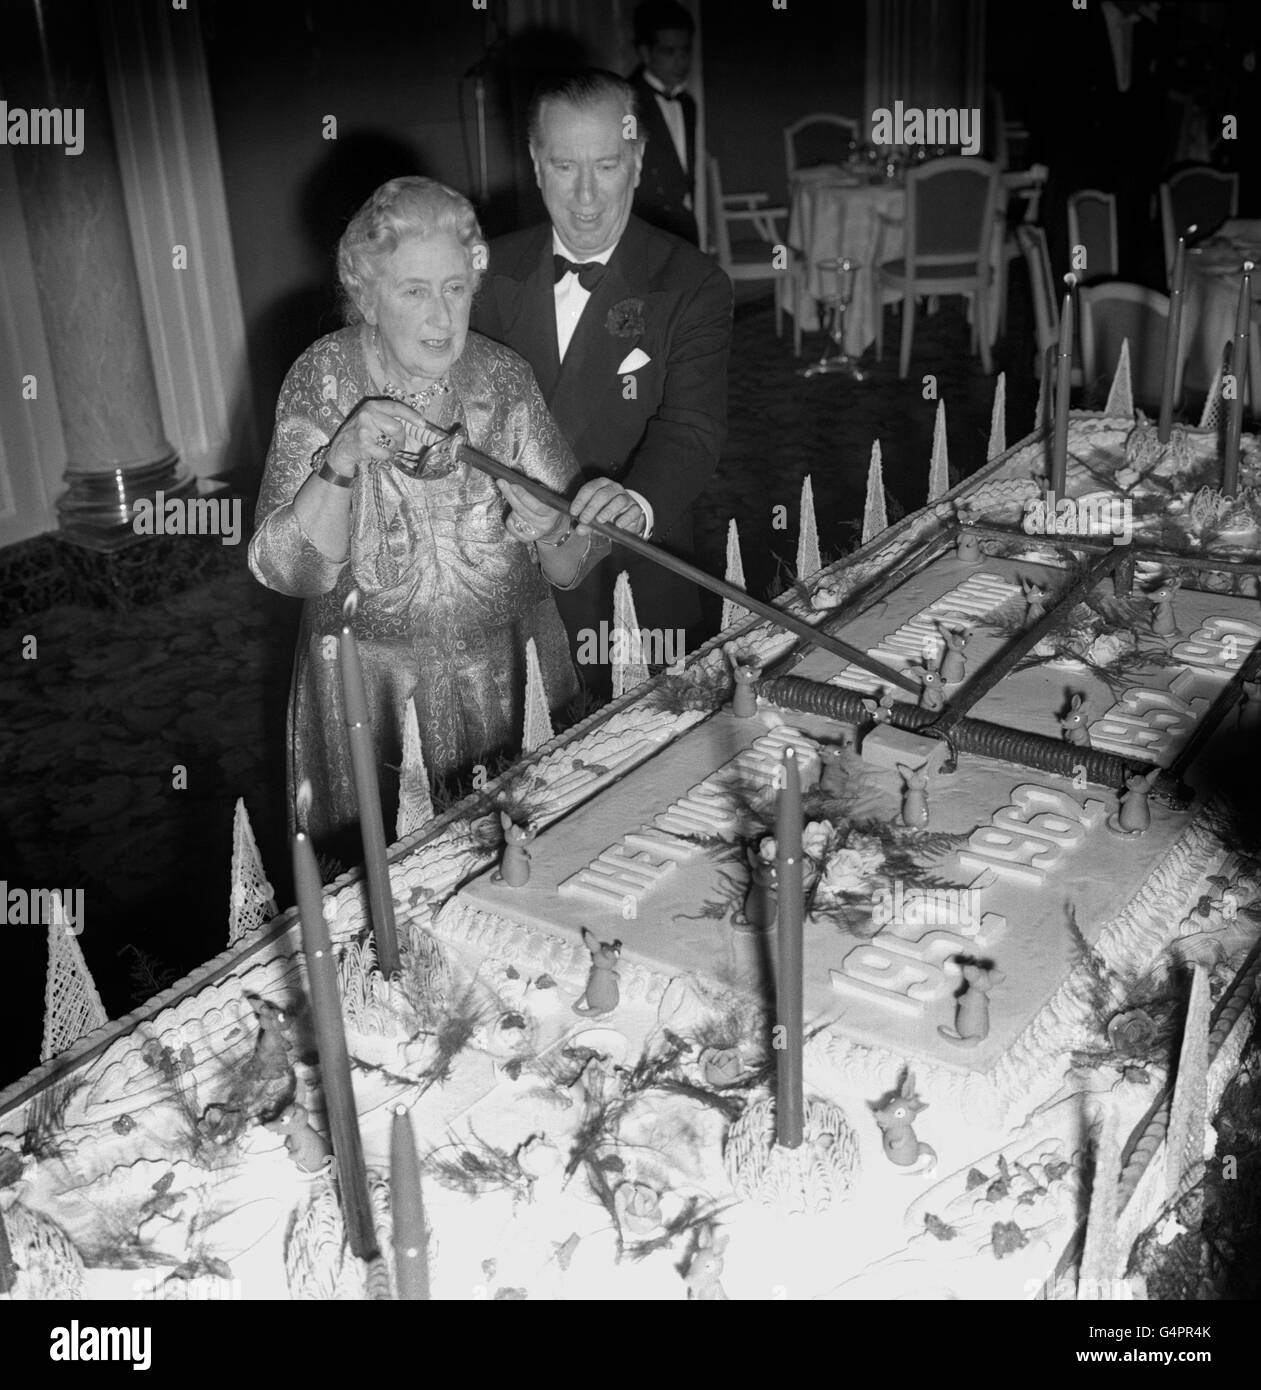 Agatha Christie, auteur de la pièce record 'The Mousetrap', utilise une épée pour couper un gâteau d'anniversaire, pesant une demi-tonne, lors d'une fête à l'Hôtel Savoy pour célébrer le 10e anniversaire de la course de sa pièce 'The Mousetrap' au Théâtre de l'Ambassadeur.Peter Saunders l'aide, qui présente la pièce.Le gâteau avait un piège géant de souris de massepain sur lui et 10 bougies.La fête, organisée par Agatha Christie et M. Saunders, a réuni 1,000 invités, dont la plupart des stars du monde du divertissement et de nombreux acteurs et actrices qui ont figuré dans la pièce. Banque D'Images